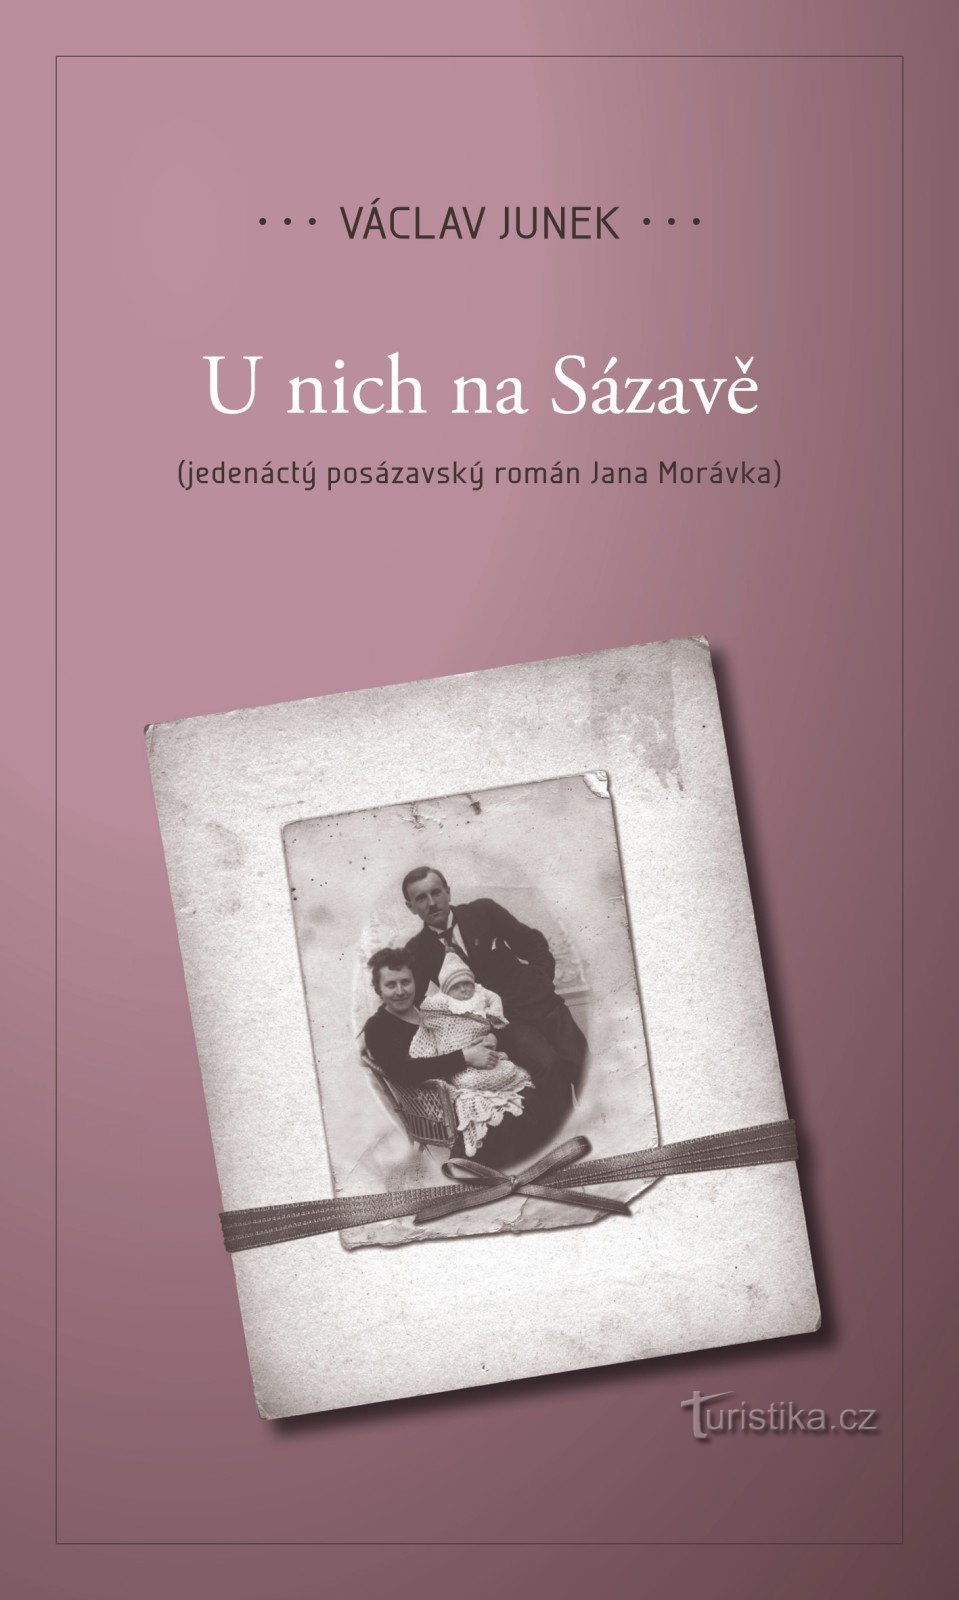 Zaprezentujemy jedenastą powieść U nich Na Sázavá Václava Junka